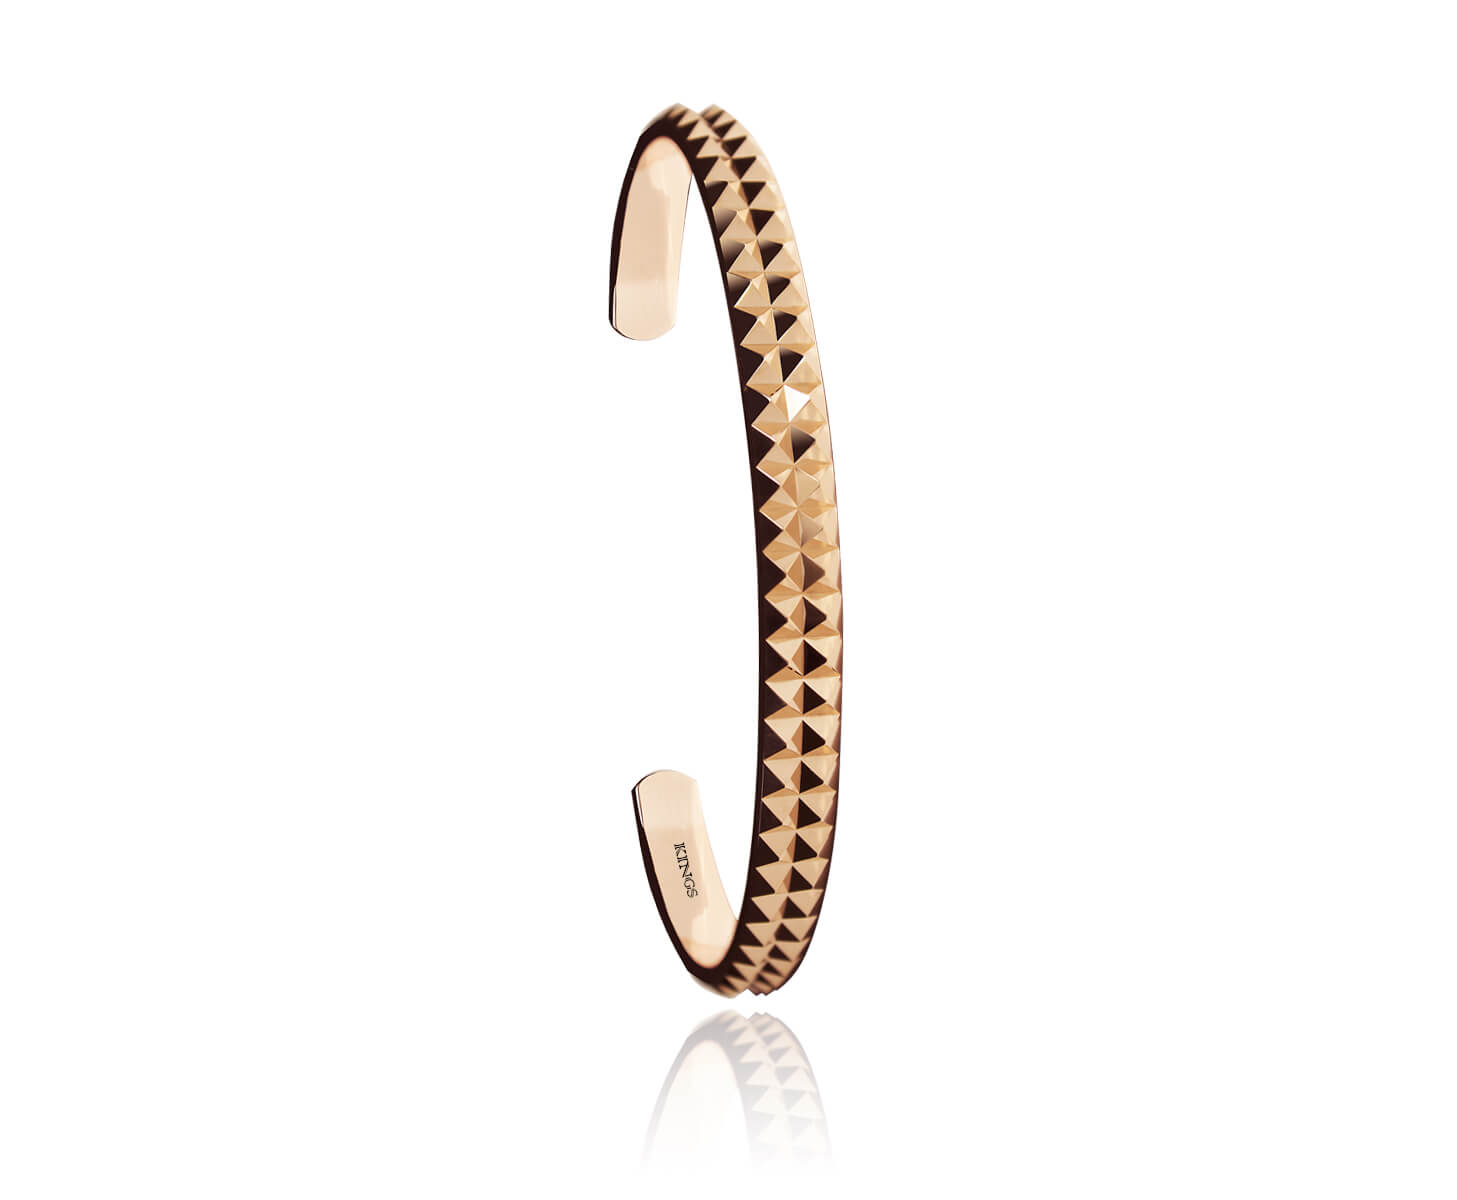 Bracelet Gold For Men 18 Karat Spikes Rose Gold Cuff Bracelet